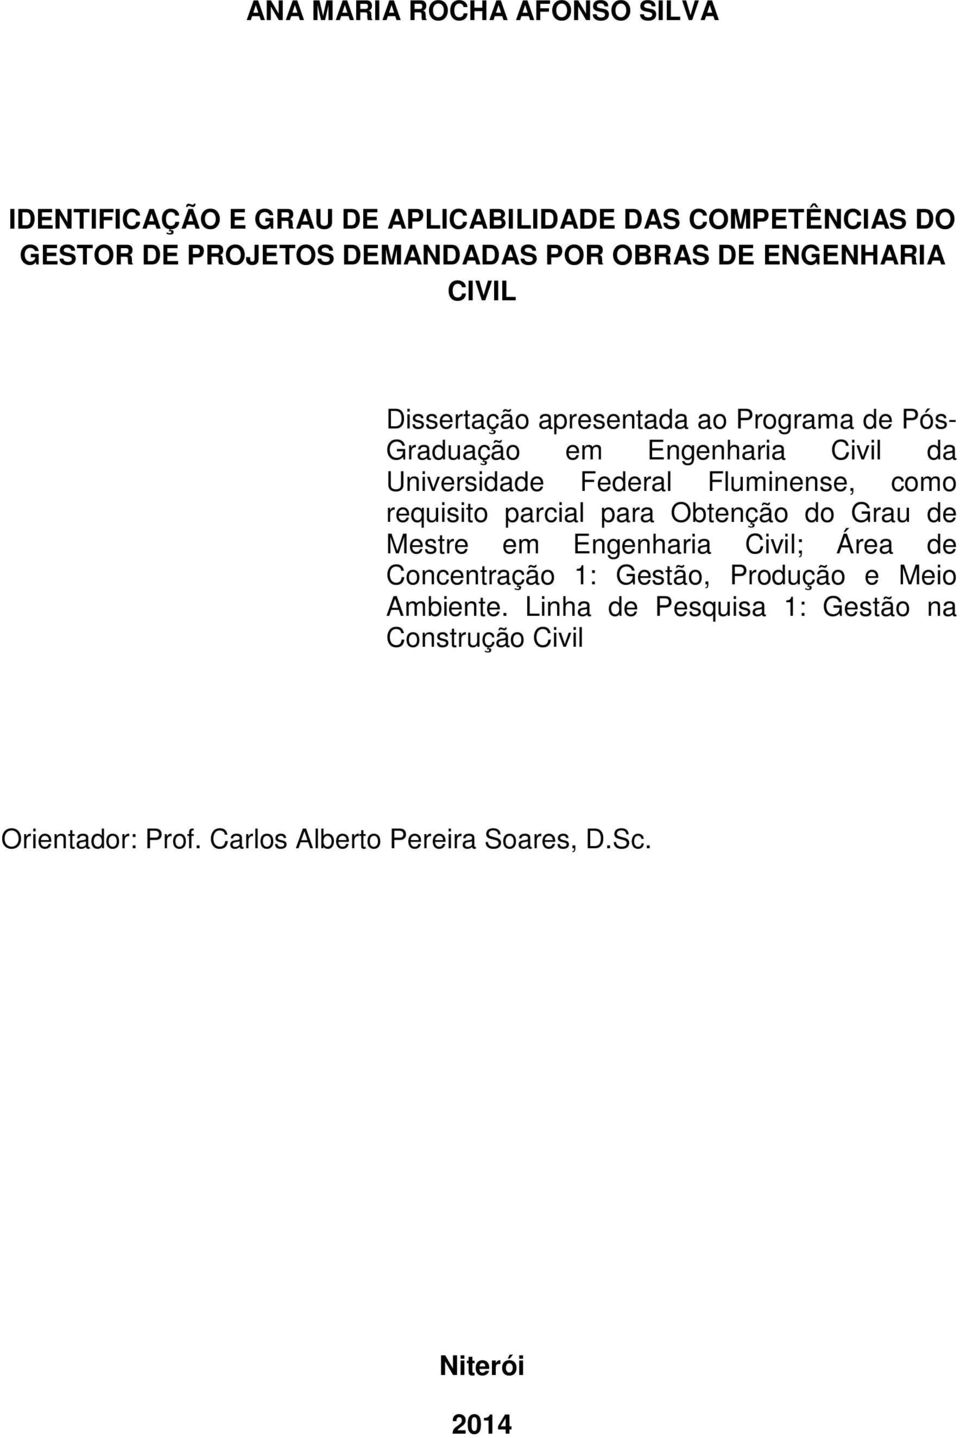 Fluminense, como requisito parcial para Obtenção do Grau de Mestre em Engenharia Civil; Área de Concentração 1: Gestão,